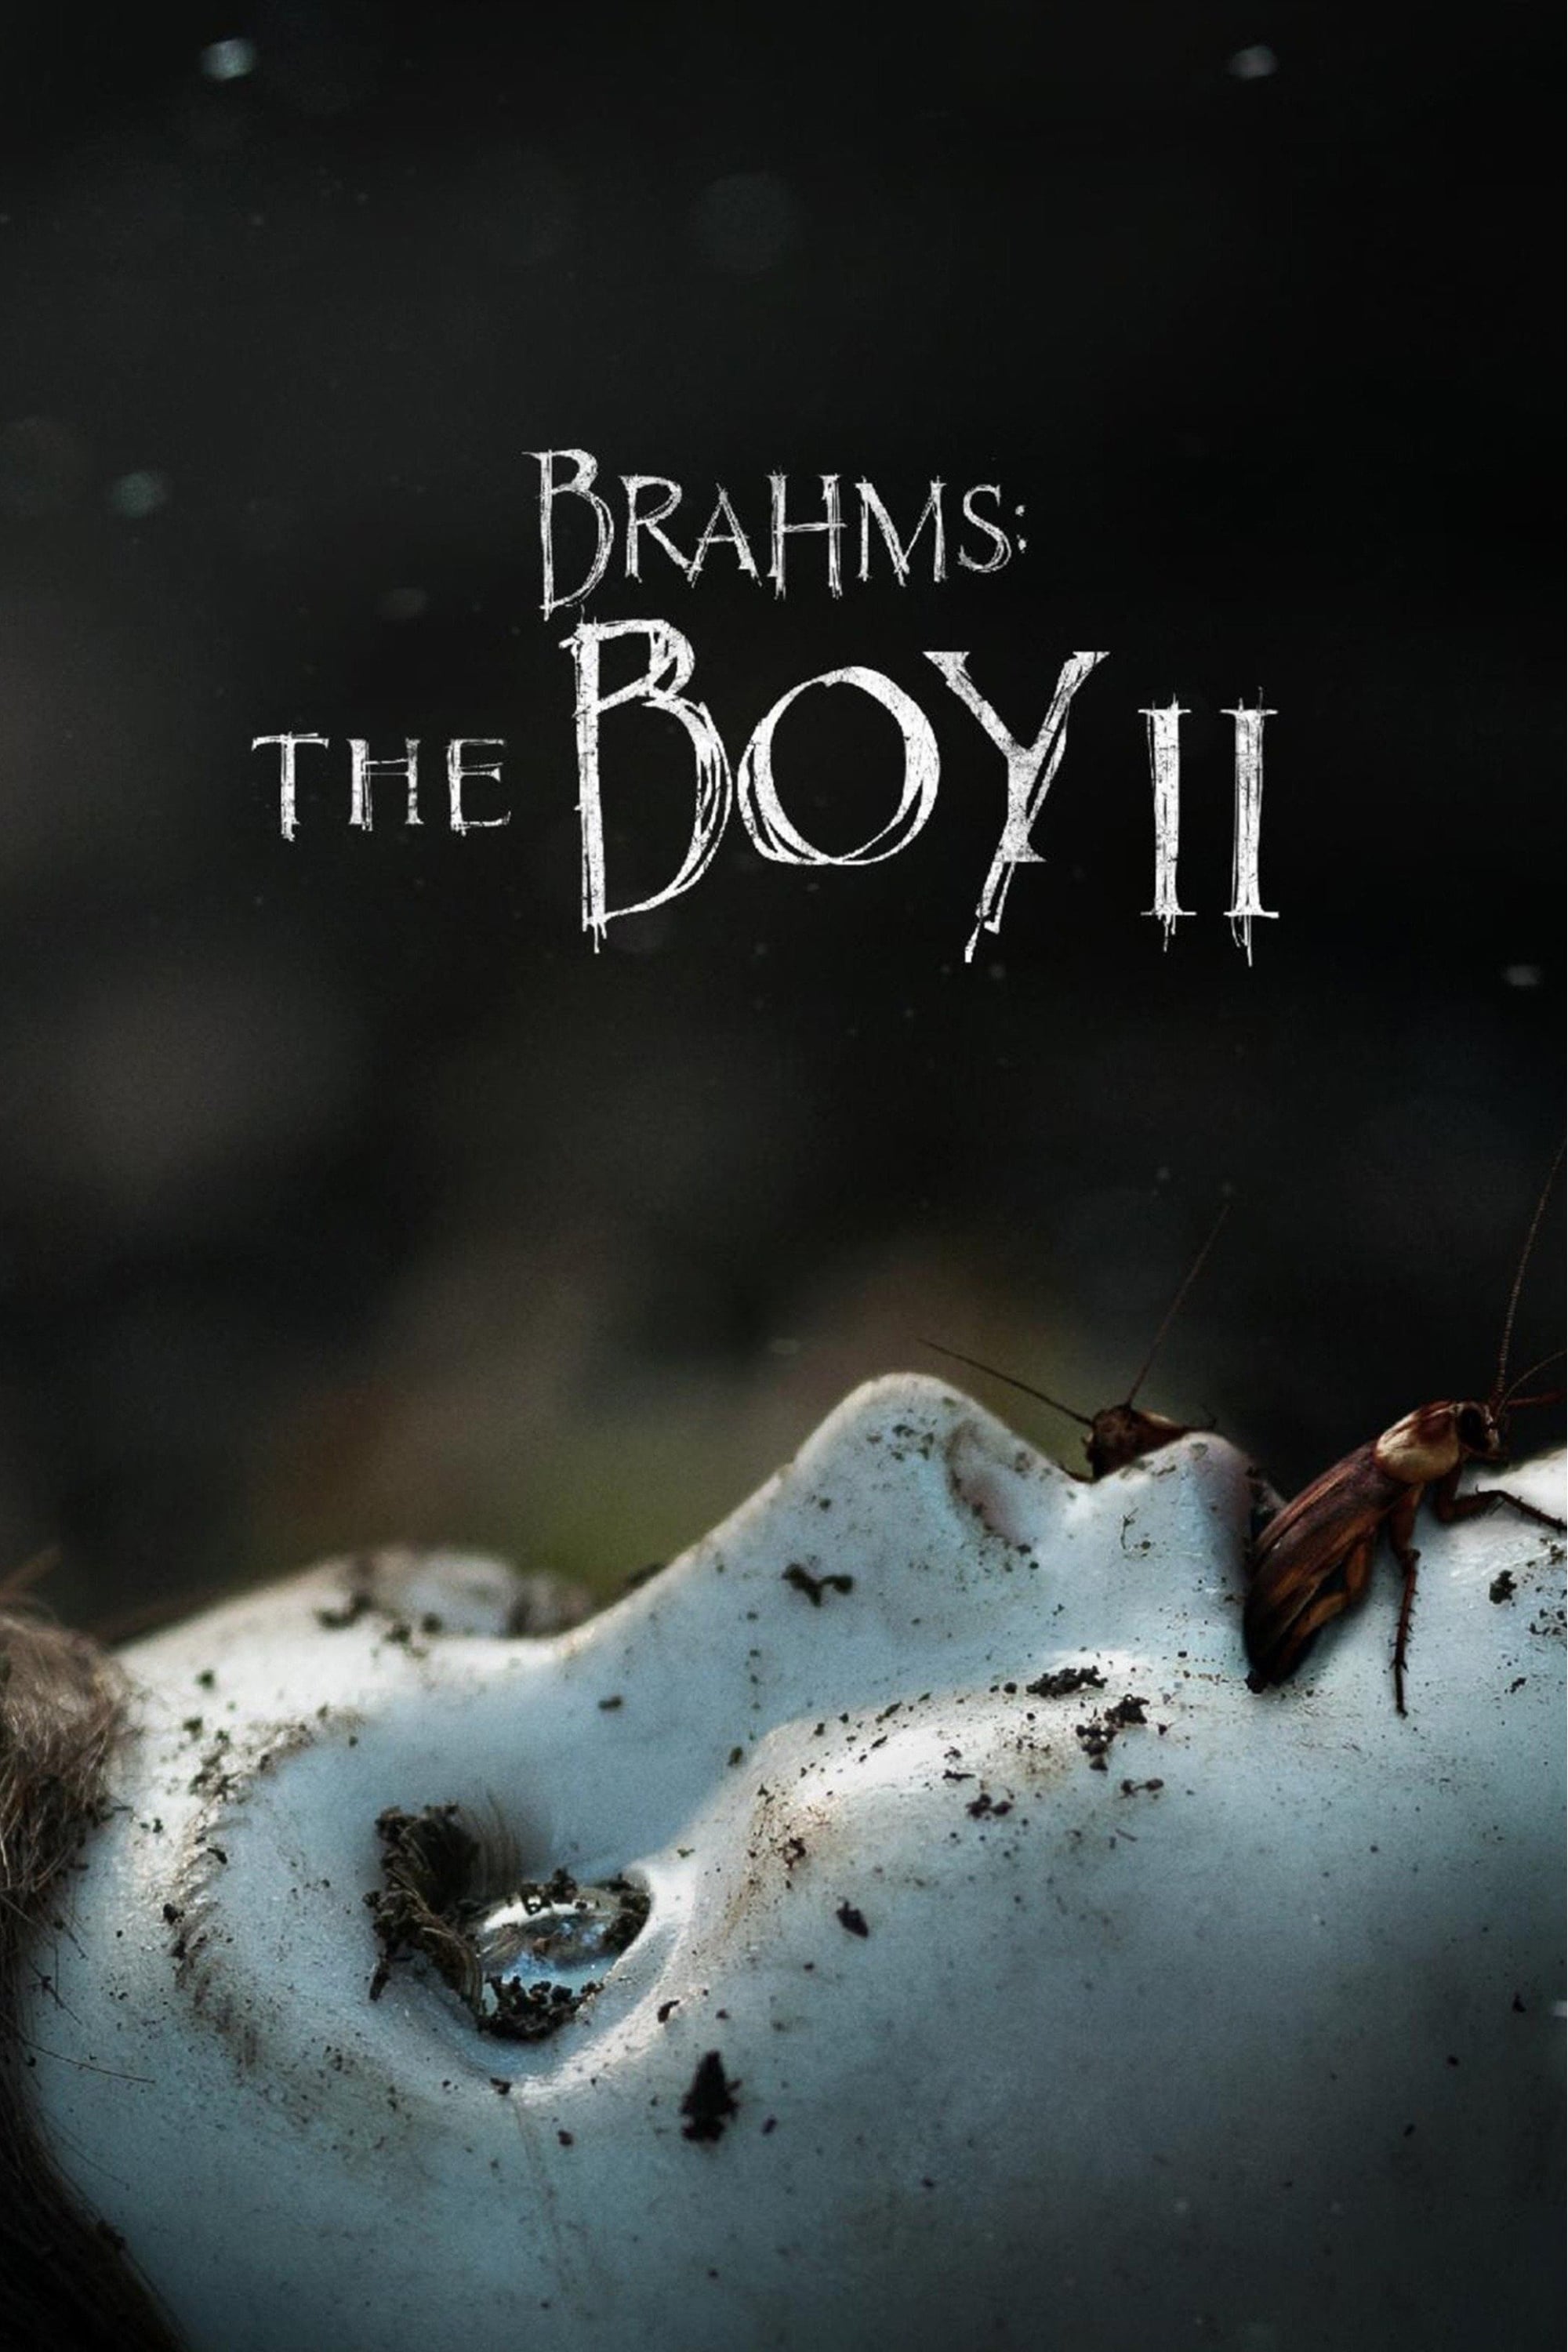 The Boy: La maldición de Brahms (2020)